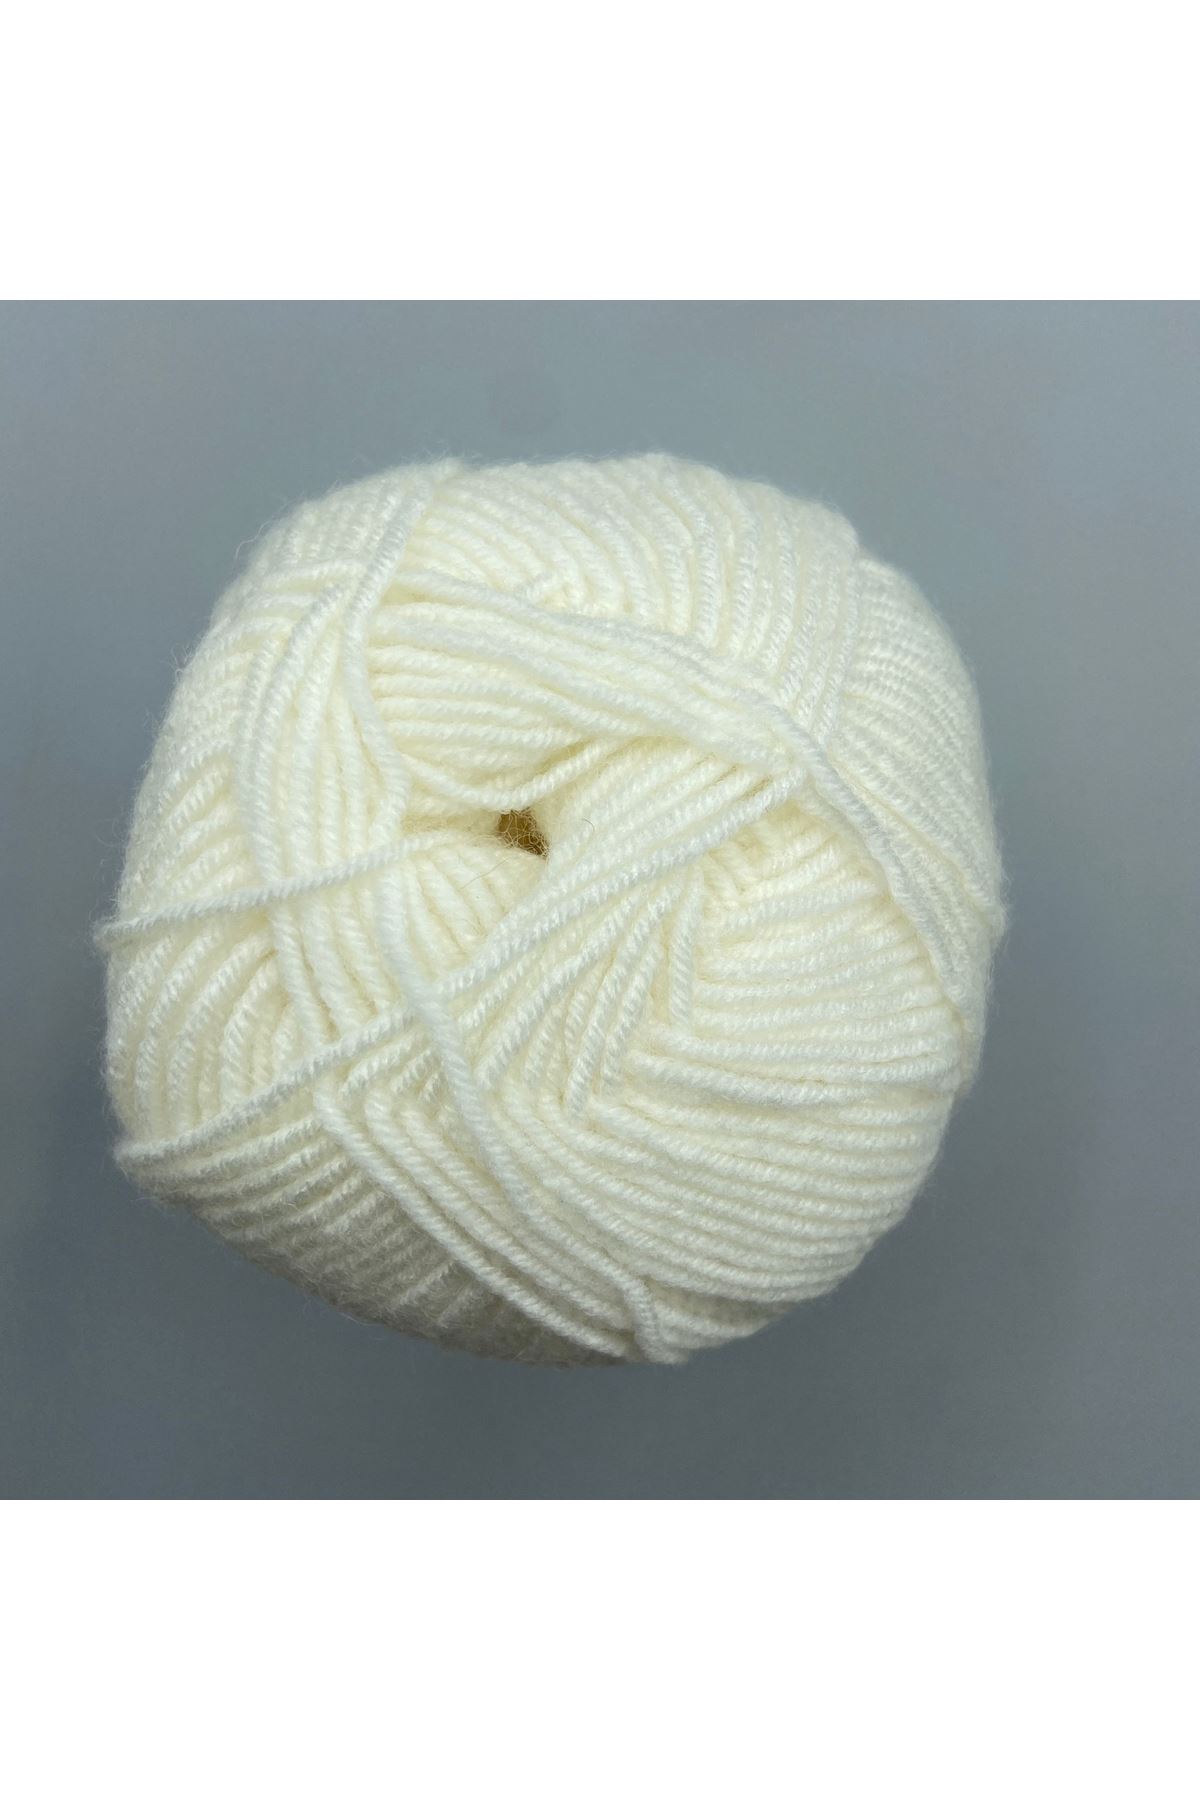 Lady Yarn Super Wool NW025 Beyaz